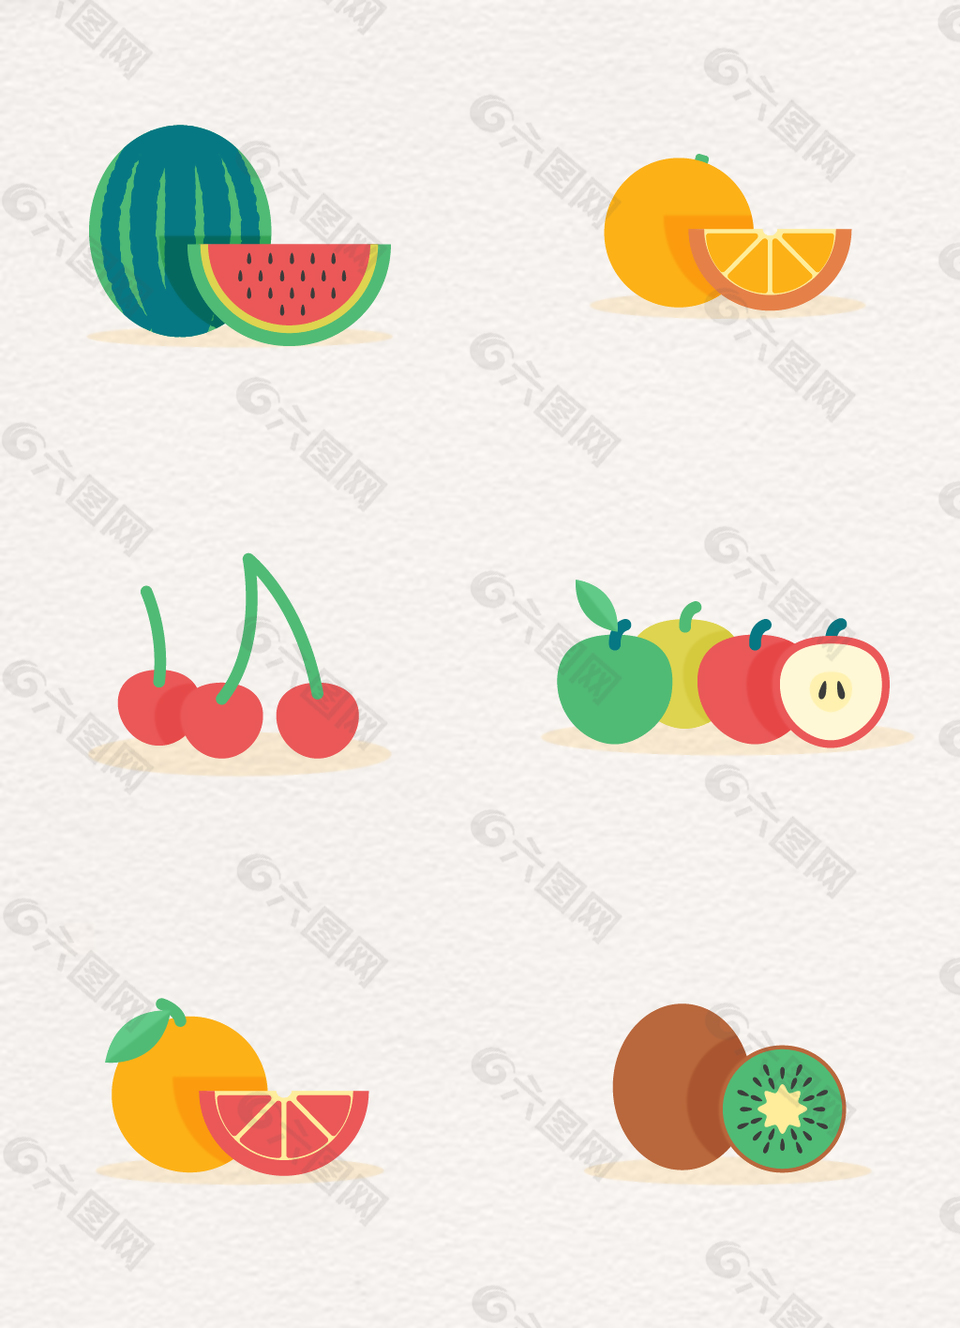 彩色水果设计矢量素材